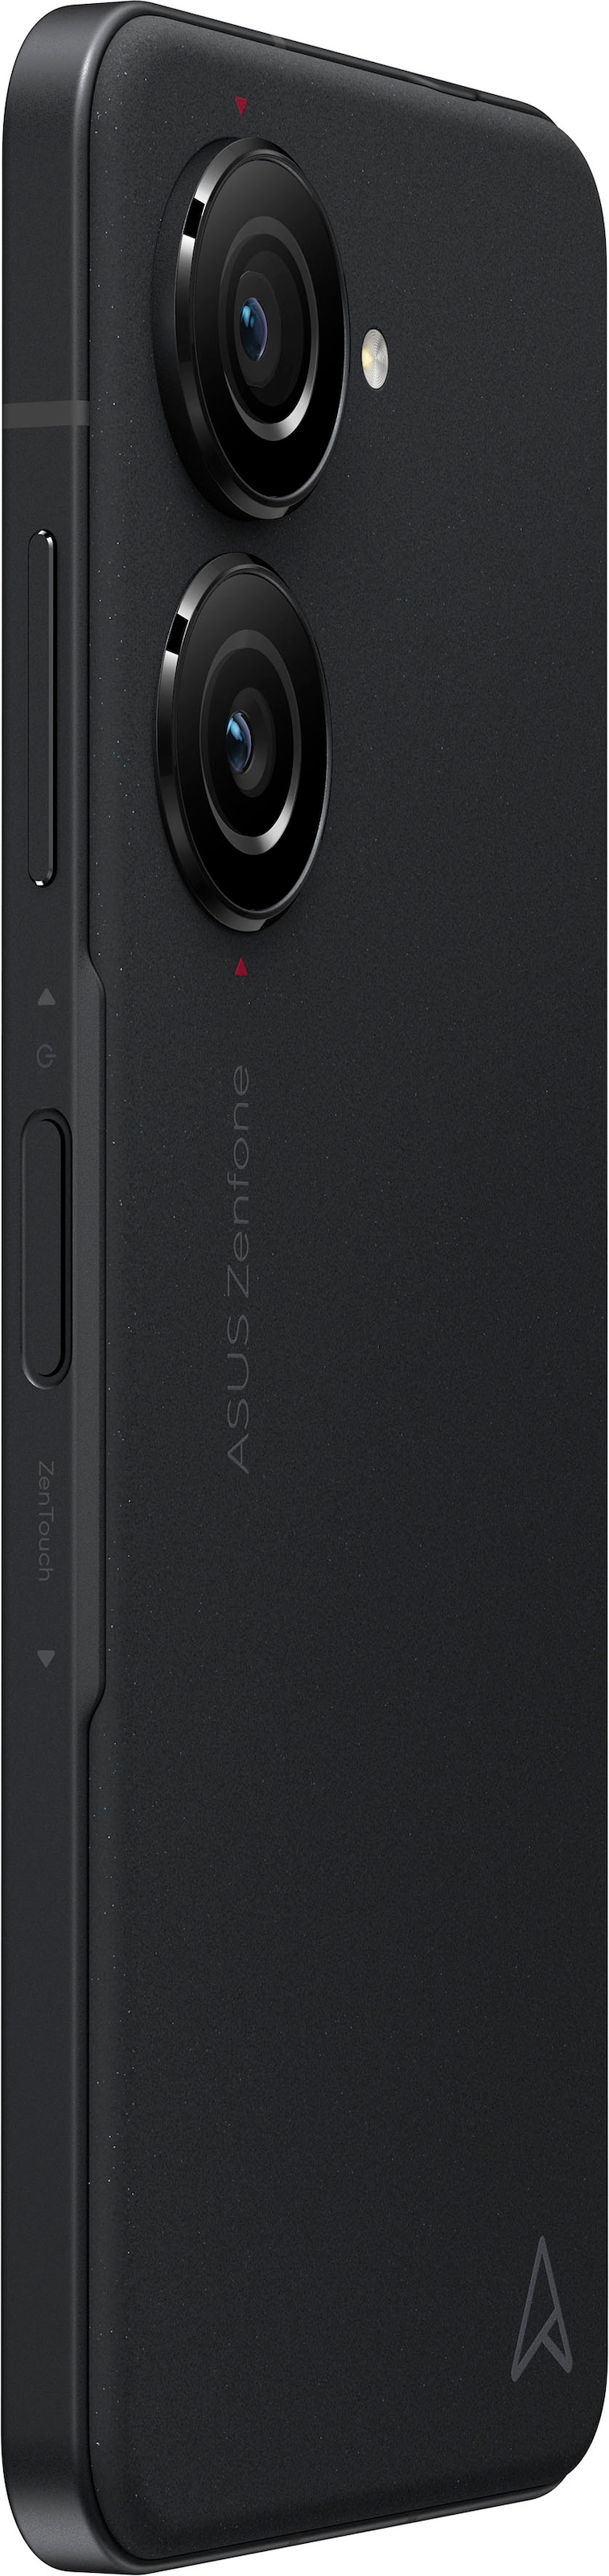 Asus Smartphone »ZENFONE 10«, schwarz, MP 14,98 GB Speicherplatz, 50 cm/5,9 bei OTTO 512 jetzt Zoll, Kamera